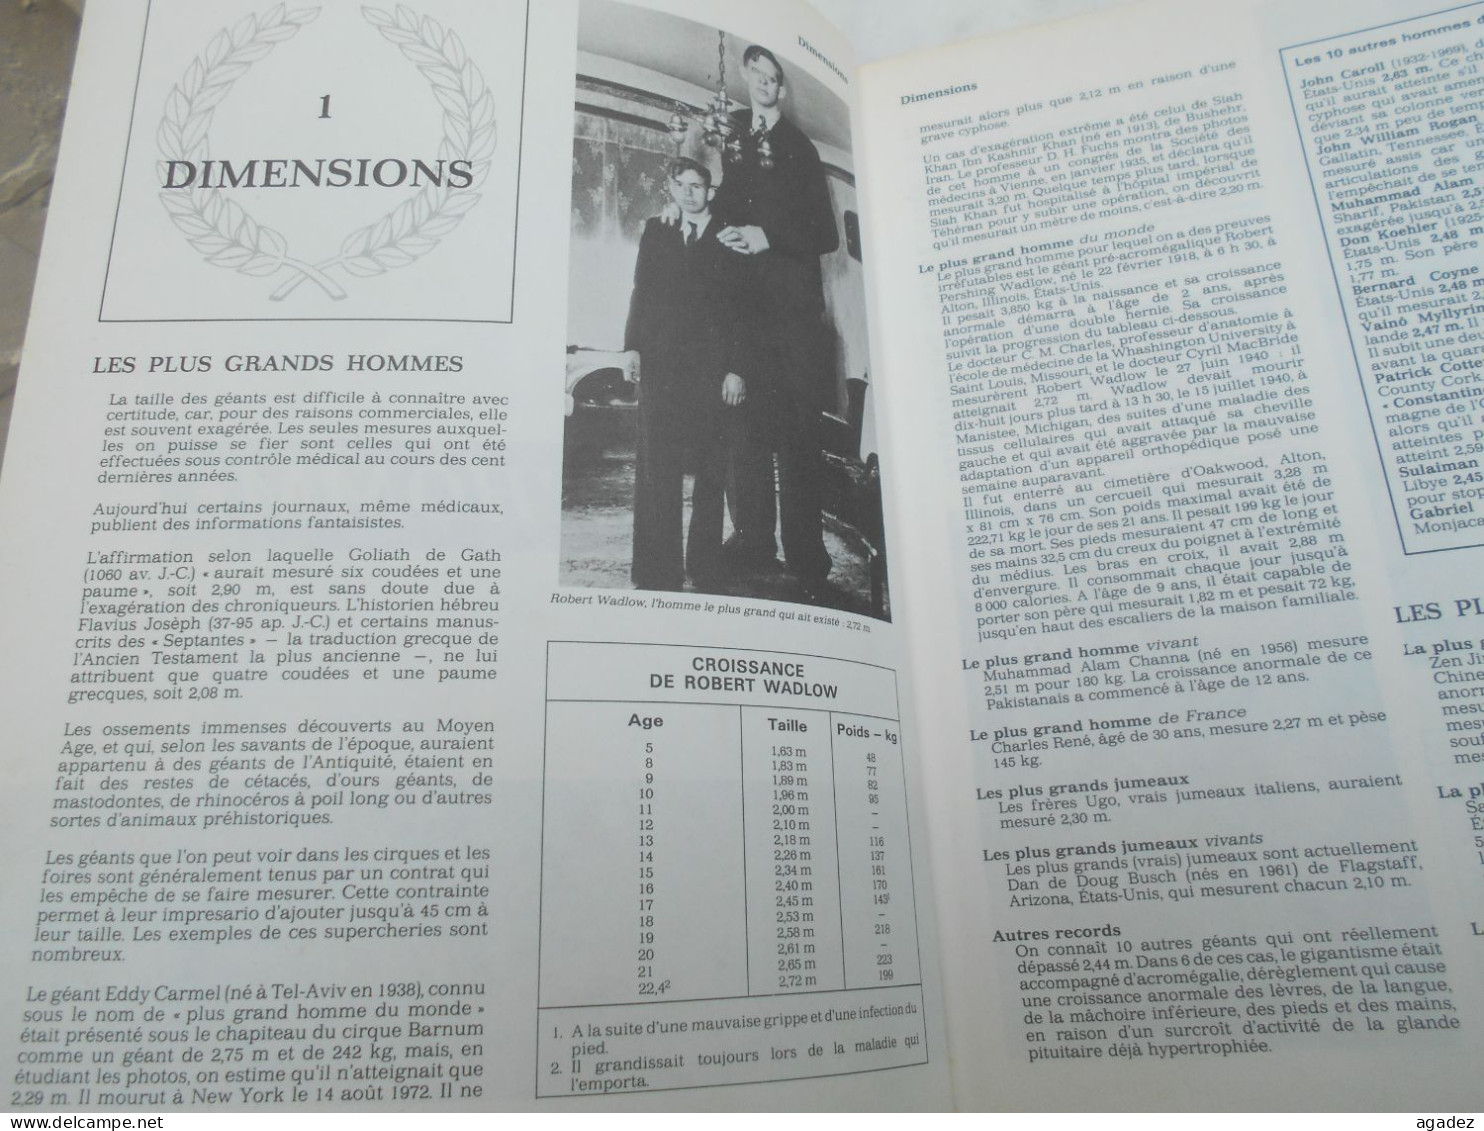 Livre Guinness Des Records 1983 - Enciclopedie